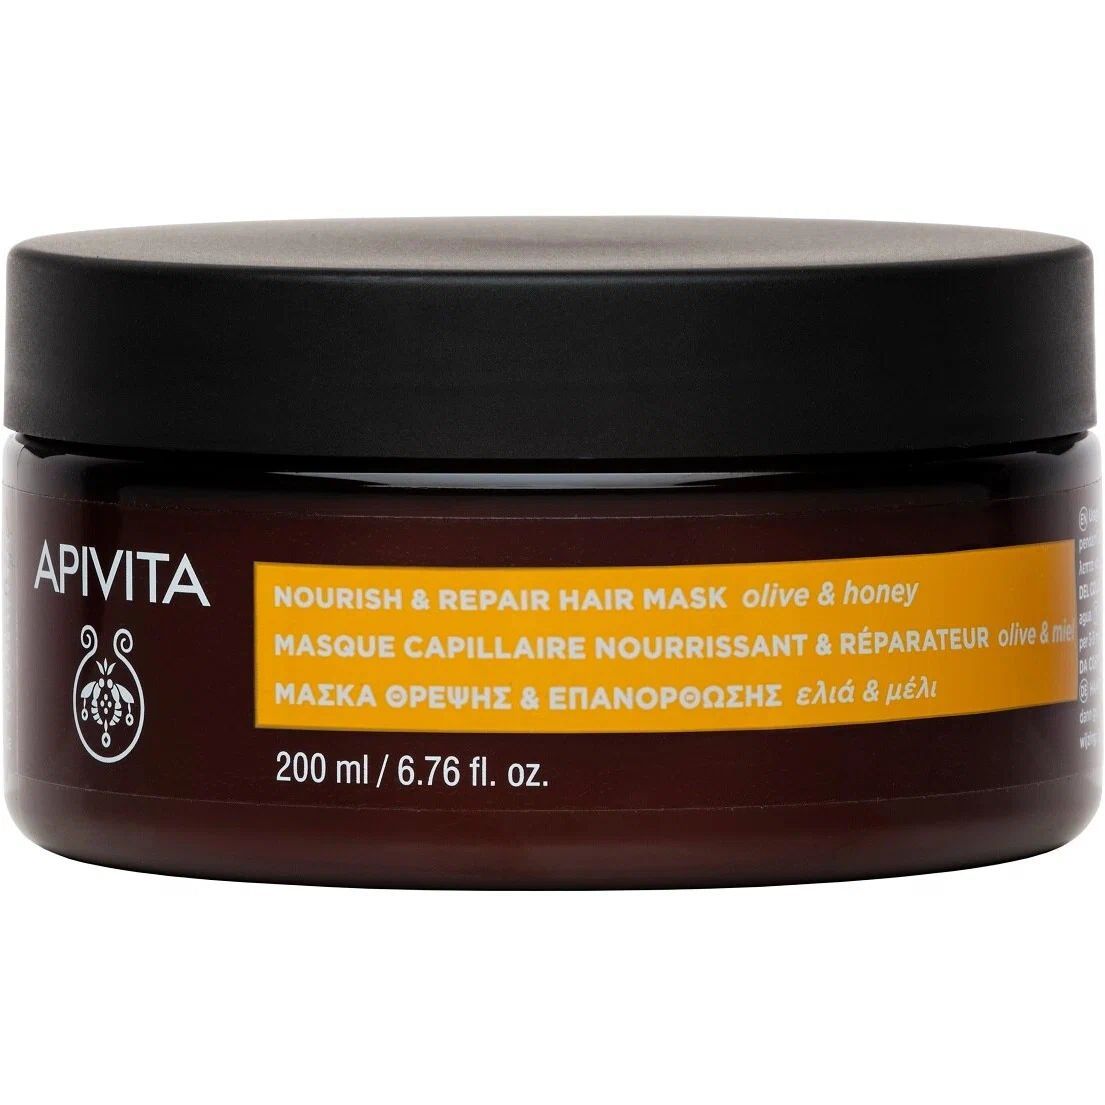 Маска для волос Apivita Питание и восстановление, с оливой и медом, 200 мл - фото 1